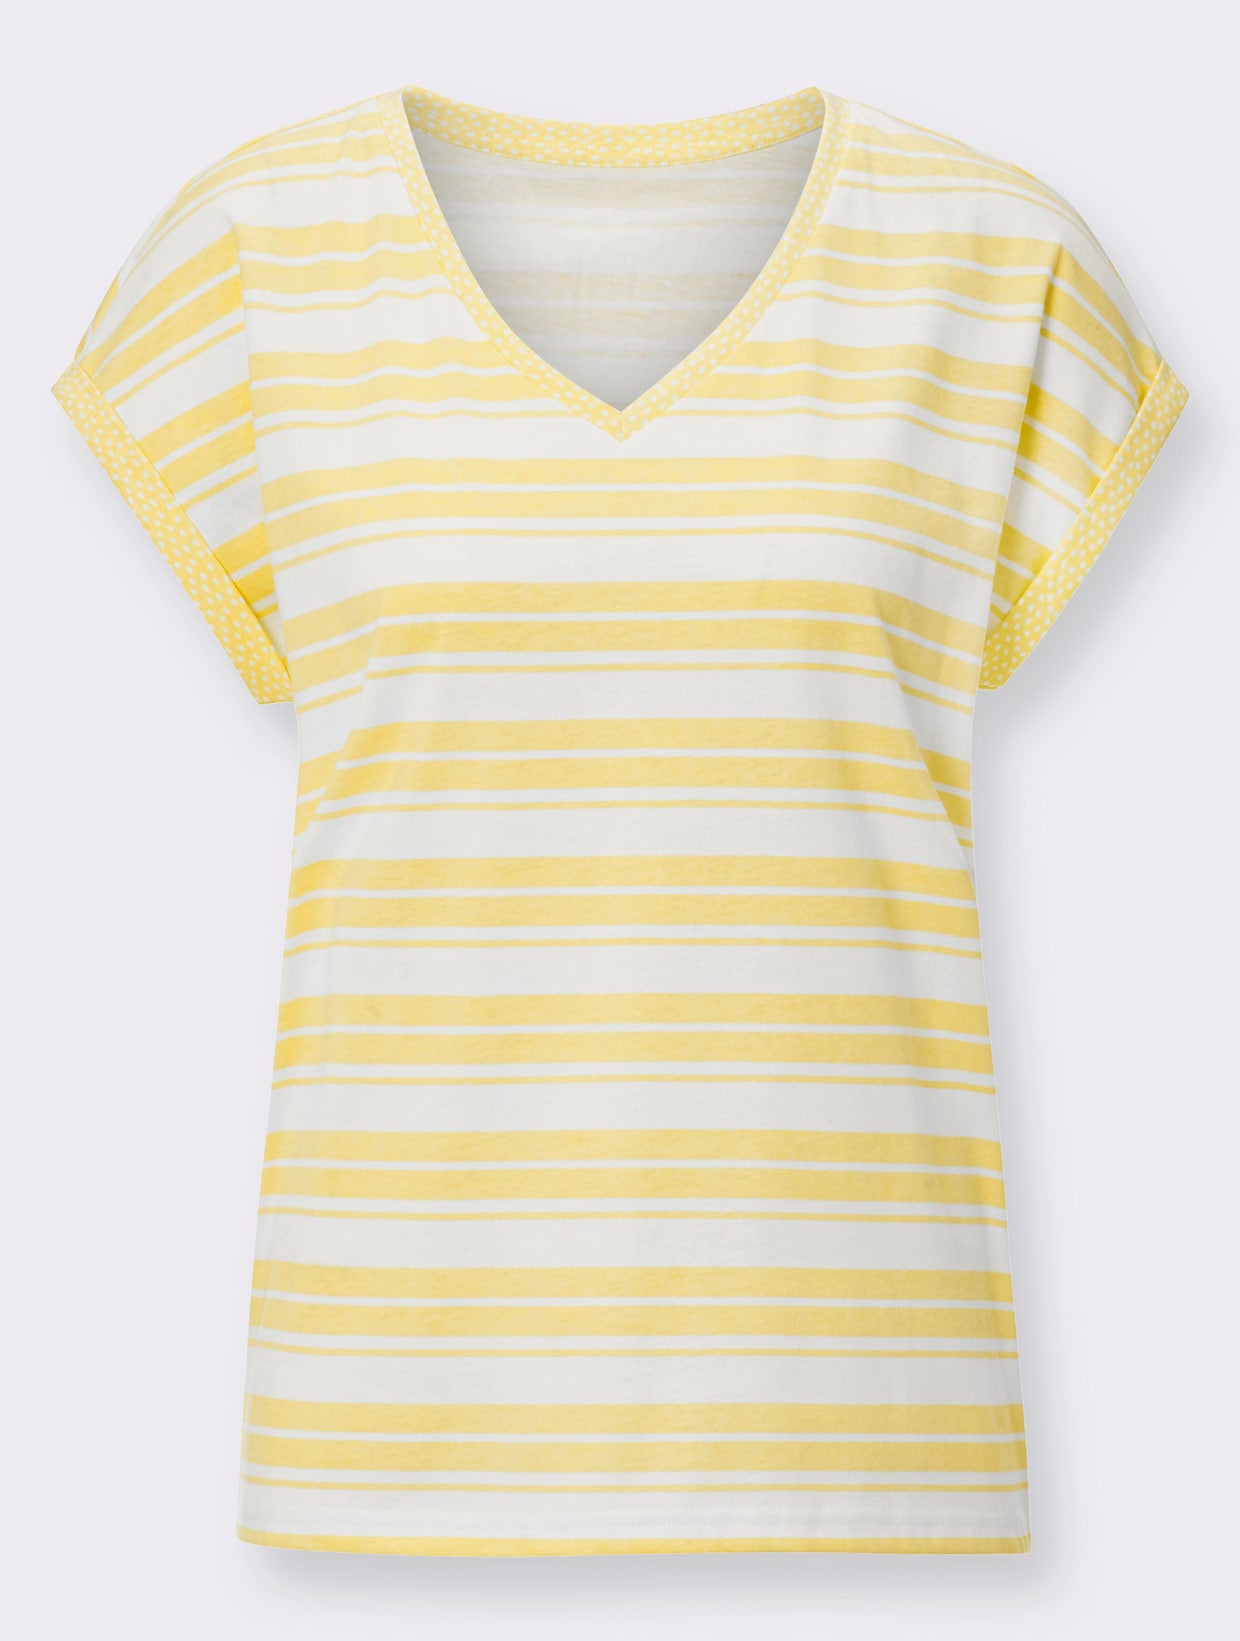 Proužkované tričko - citronová-bílá-proužek